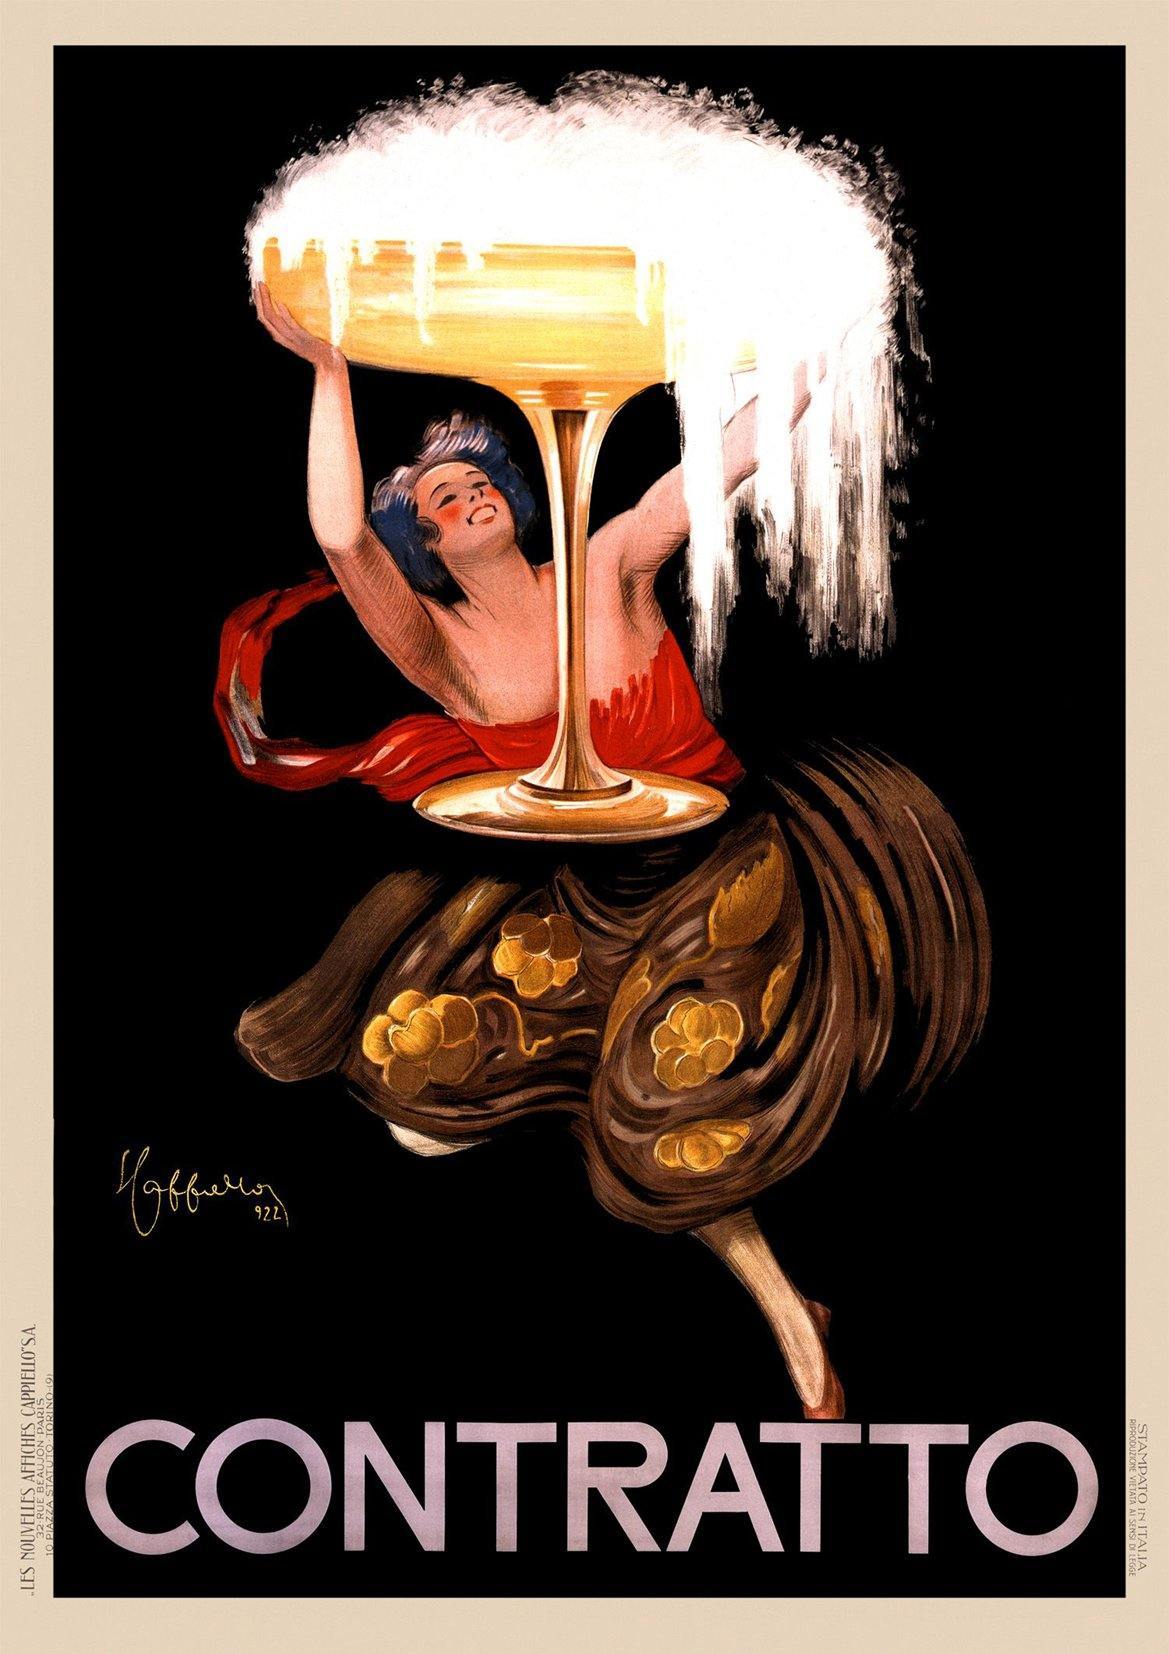 CONTRATO POSTER: Vintage Champagne Art Print - Pimlico Prints